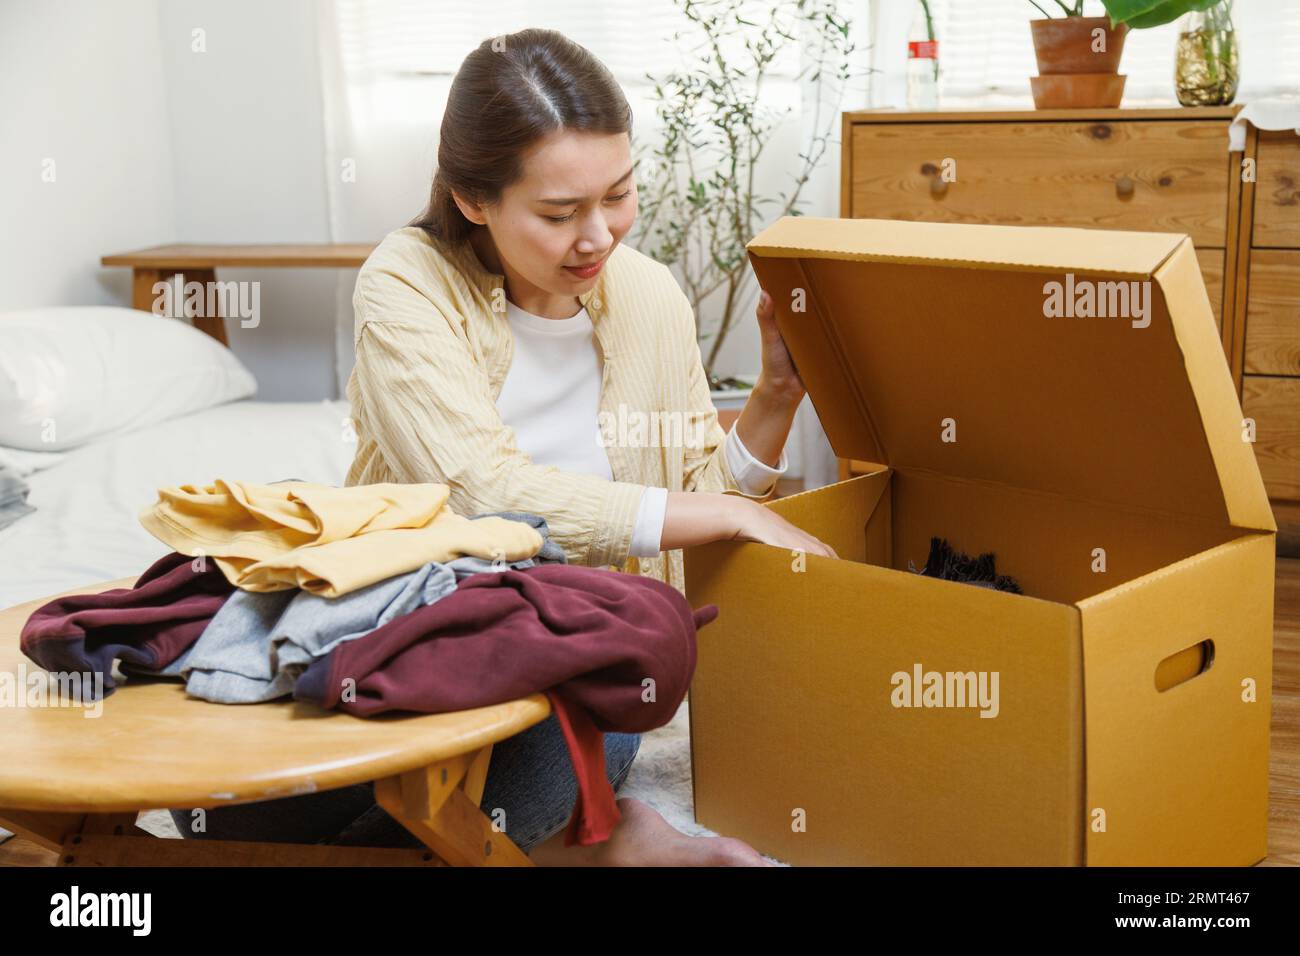 Jeune femme asiatique mettant des vêtements dans une boîte en carton pour déménager dans une nouvelle maison ou un appartement. Banque D'Images